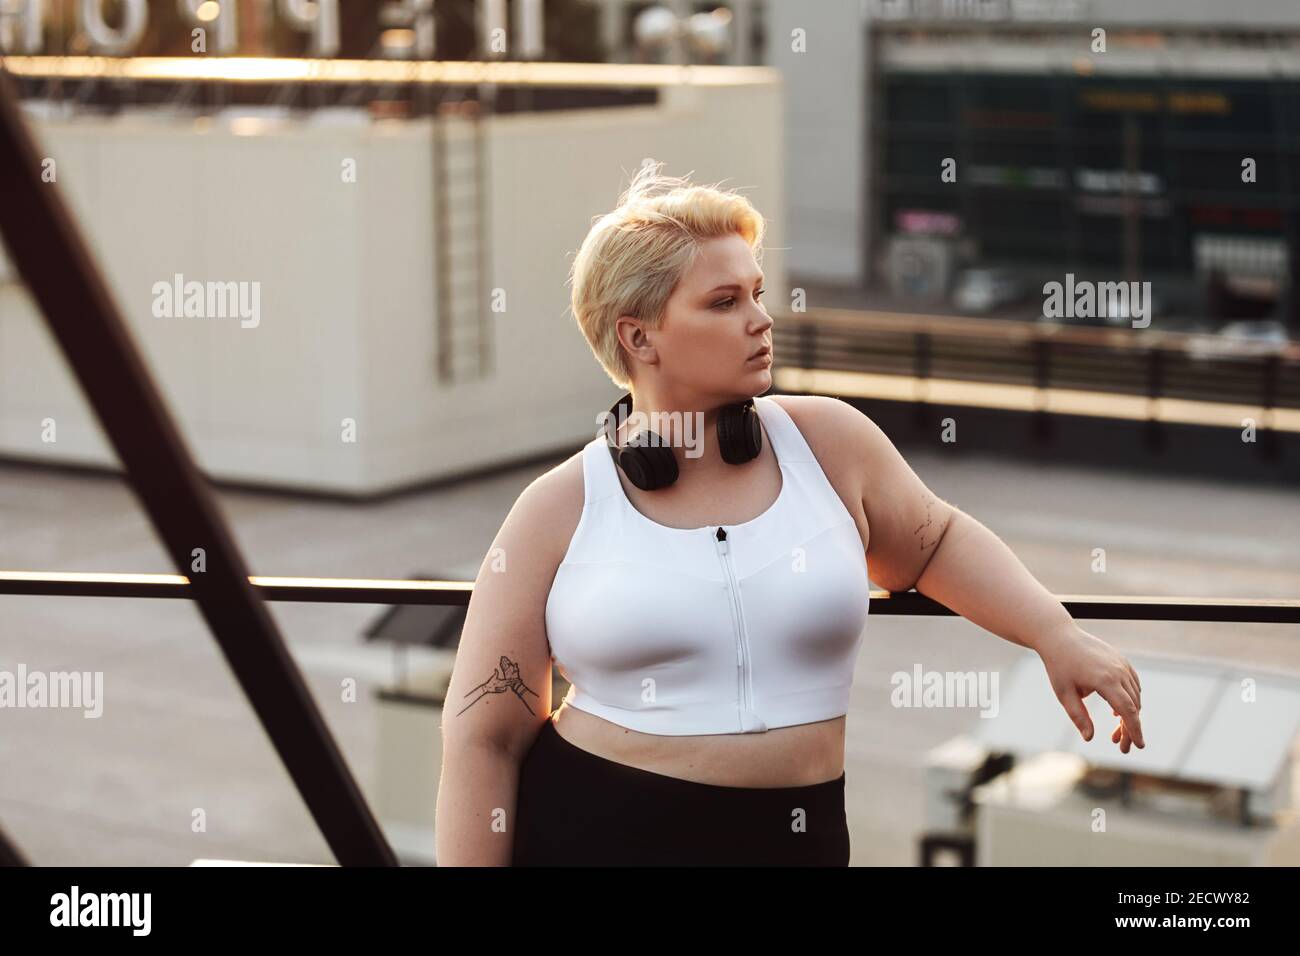 Frau mit übergroßem Körper, die sich während eines Trainings auf einem Dach an ein Geländer lehnt. Übergroße Fitness Frau in Sportbekleidung trägt Kopfhörer Blick weg outdoo Stockfoto